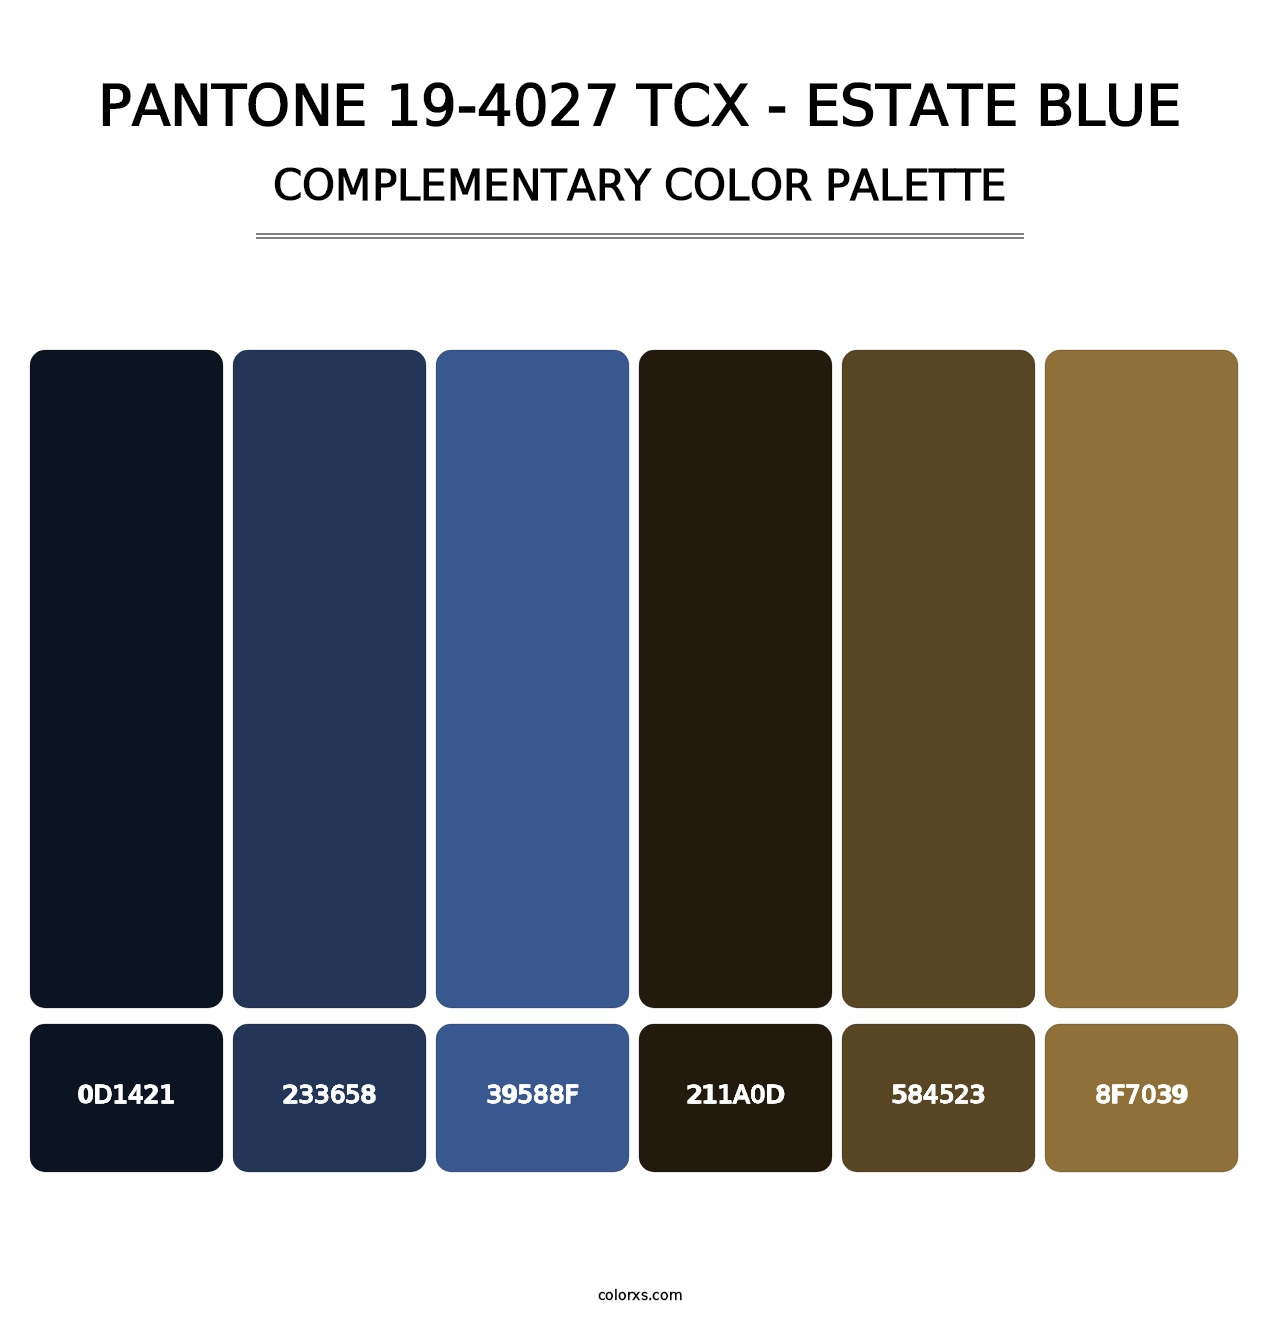 PANTONE 19-4027 TCX - Estate Blue - Complementary Color Palette